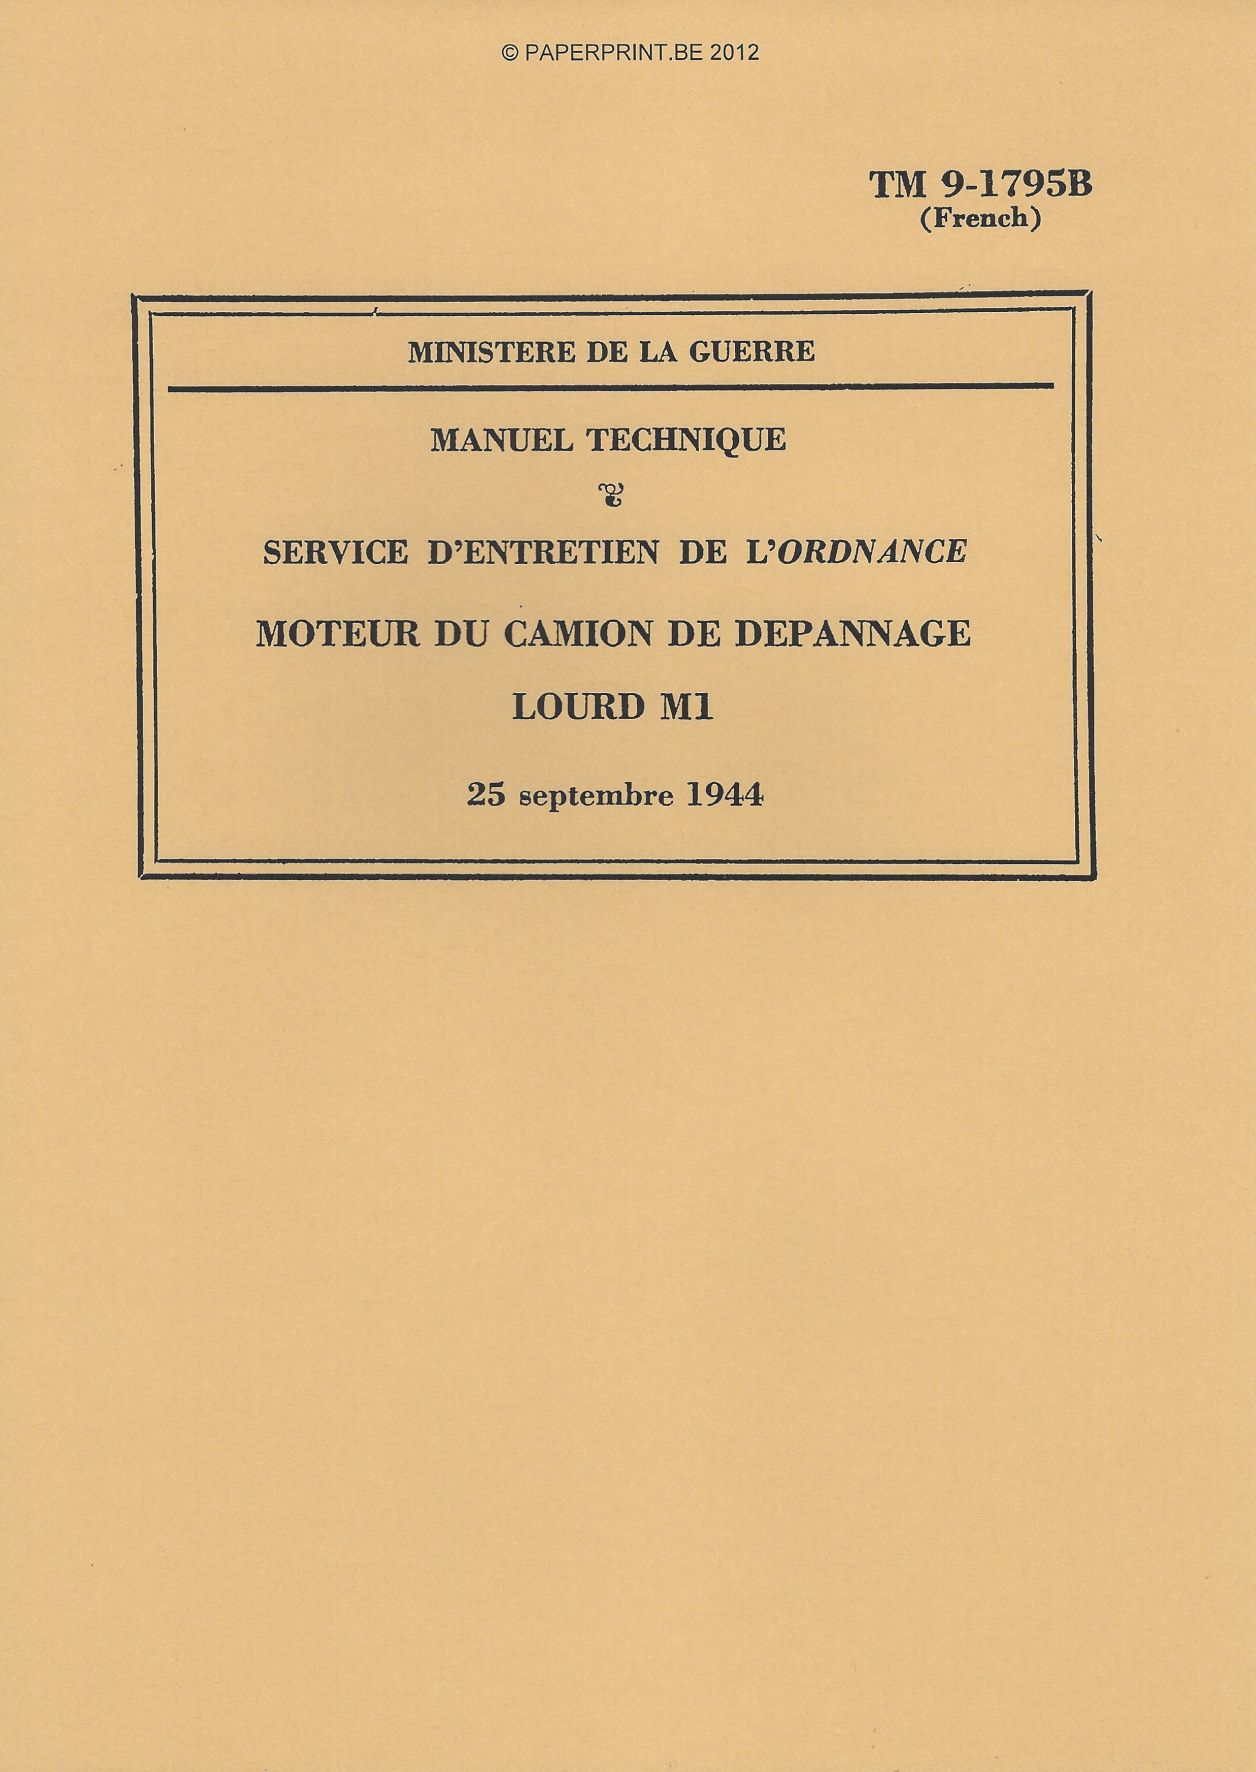 TM 9-1795B FR MOTEUR DU CAMION DE DEPANNAGE LOURD M1